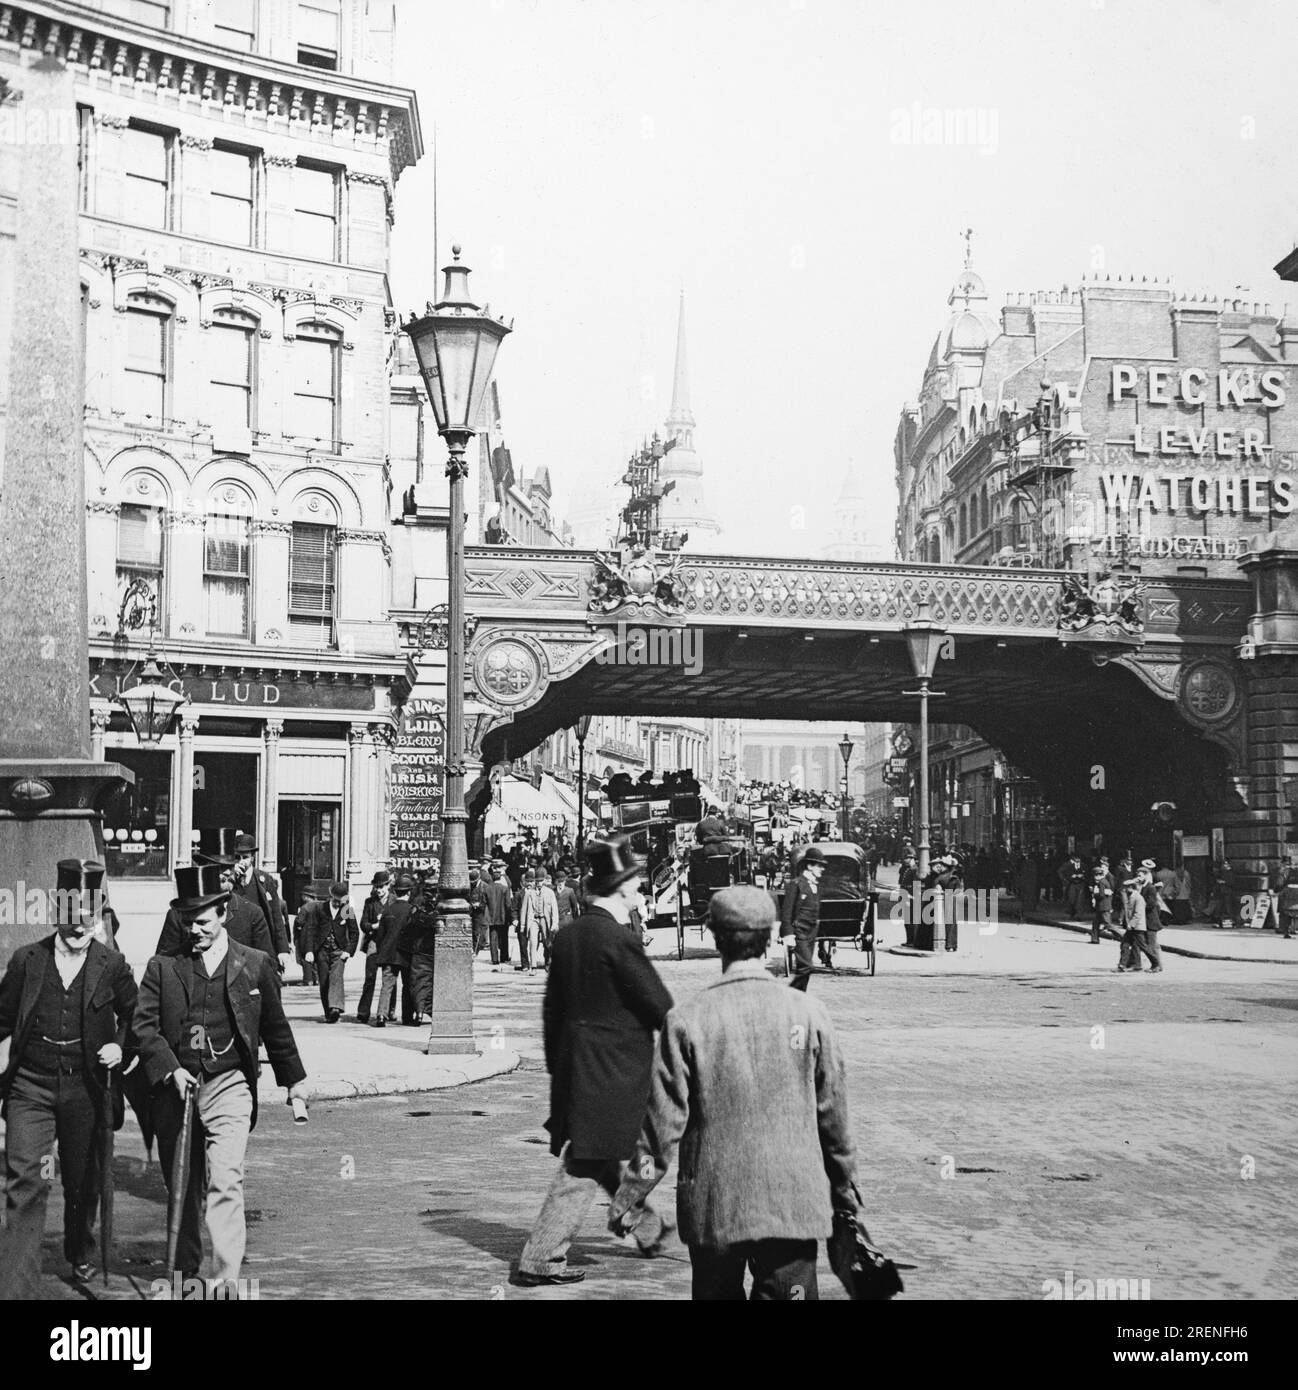 Fotografia in bianco e nero tardo vittoriano che mostra l'area di Ludgate Circus a Londra. Foto Stock